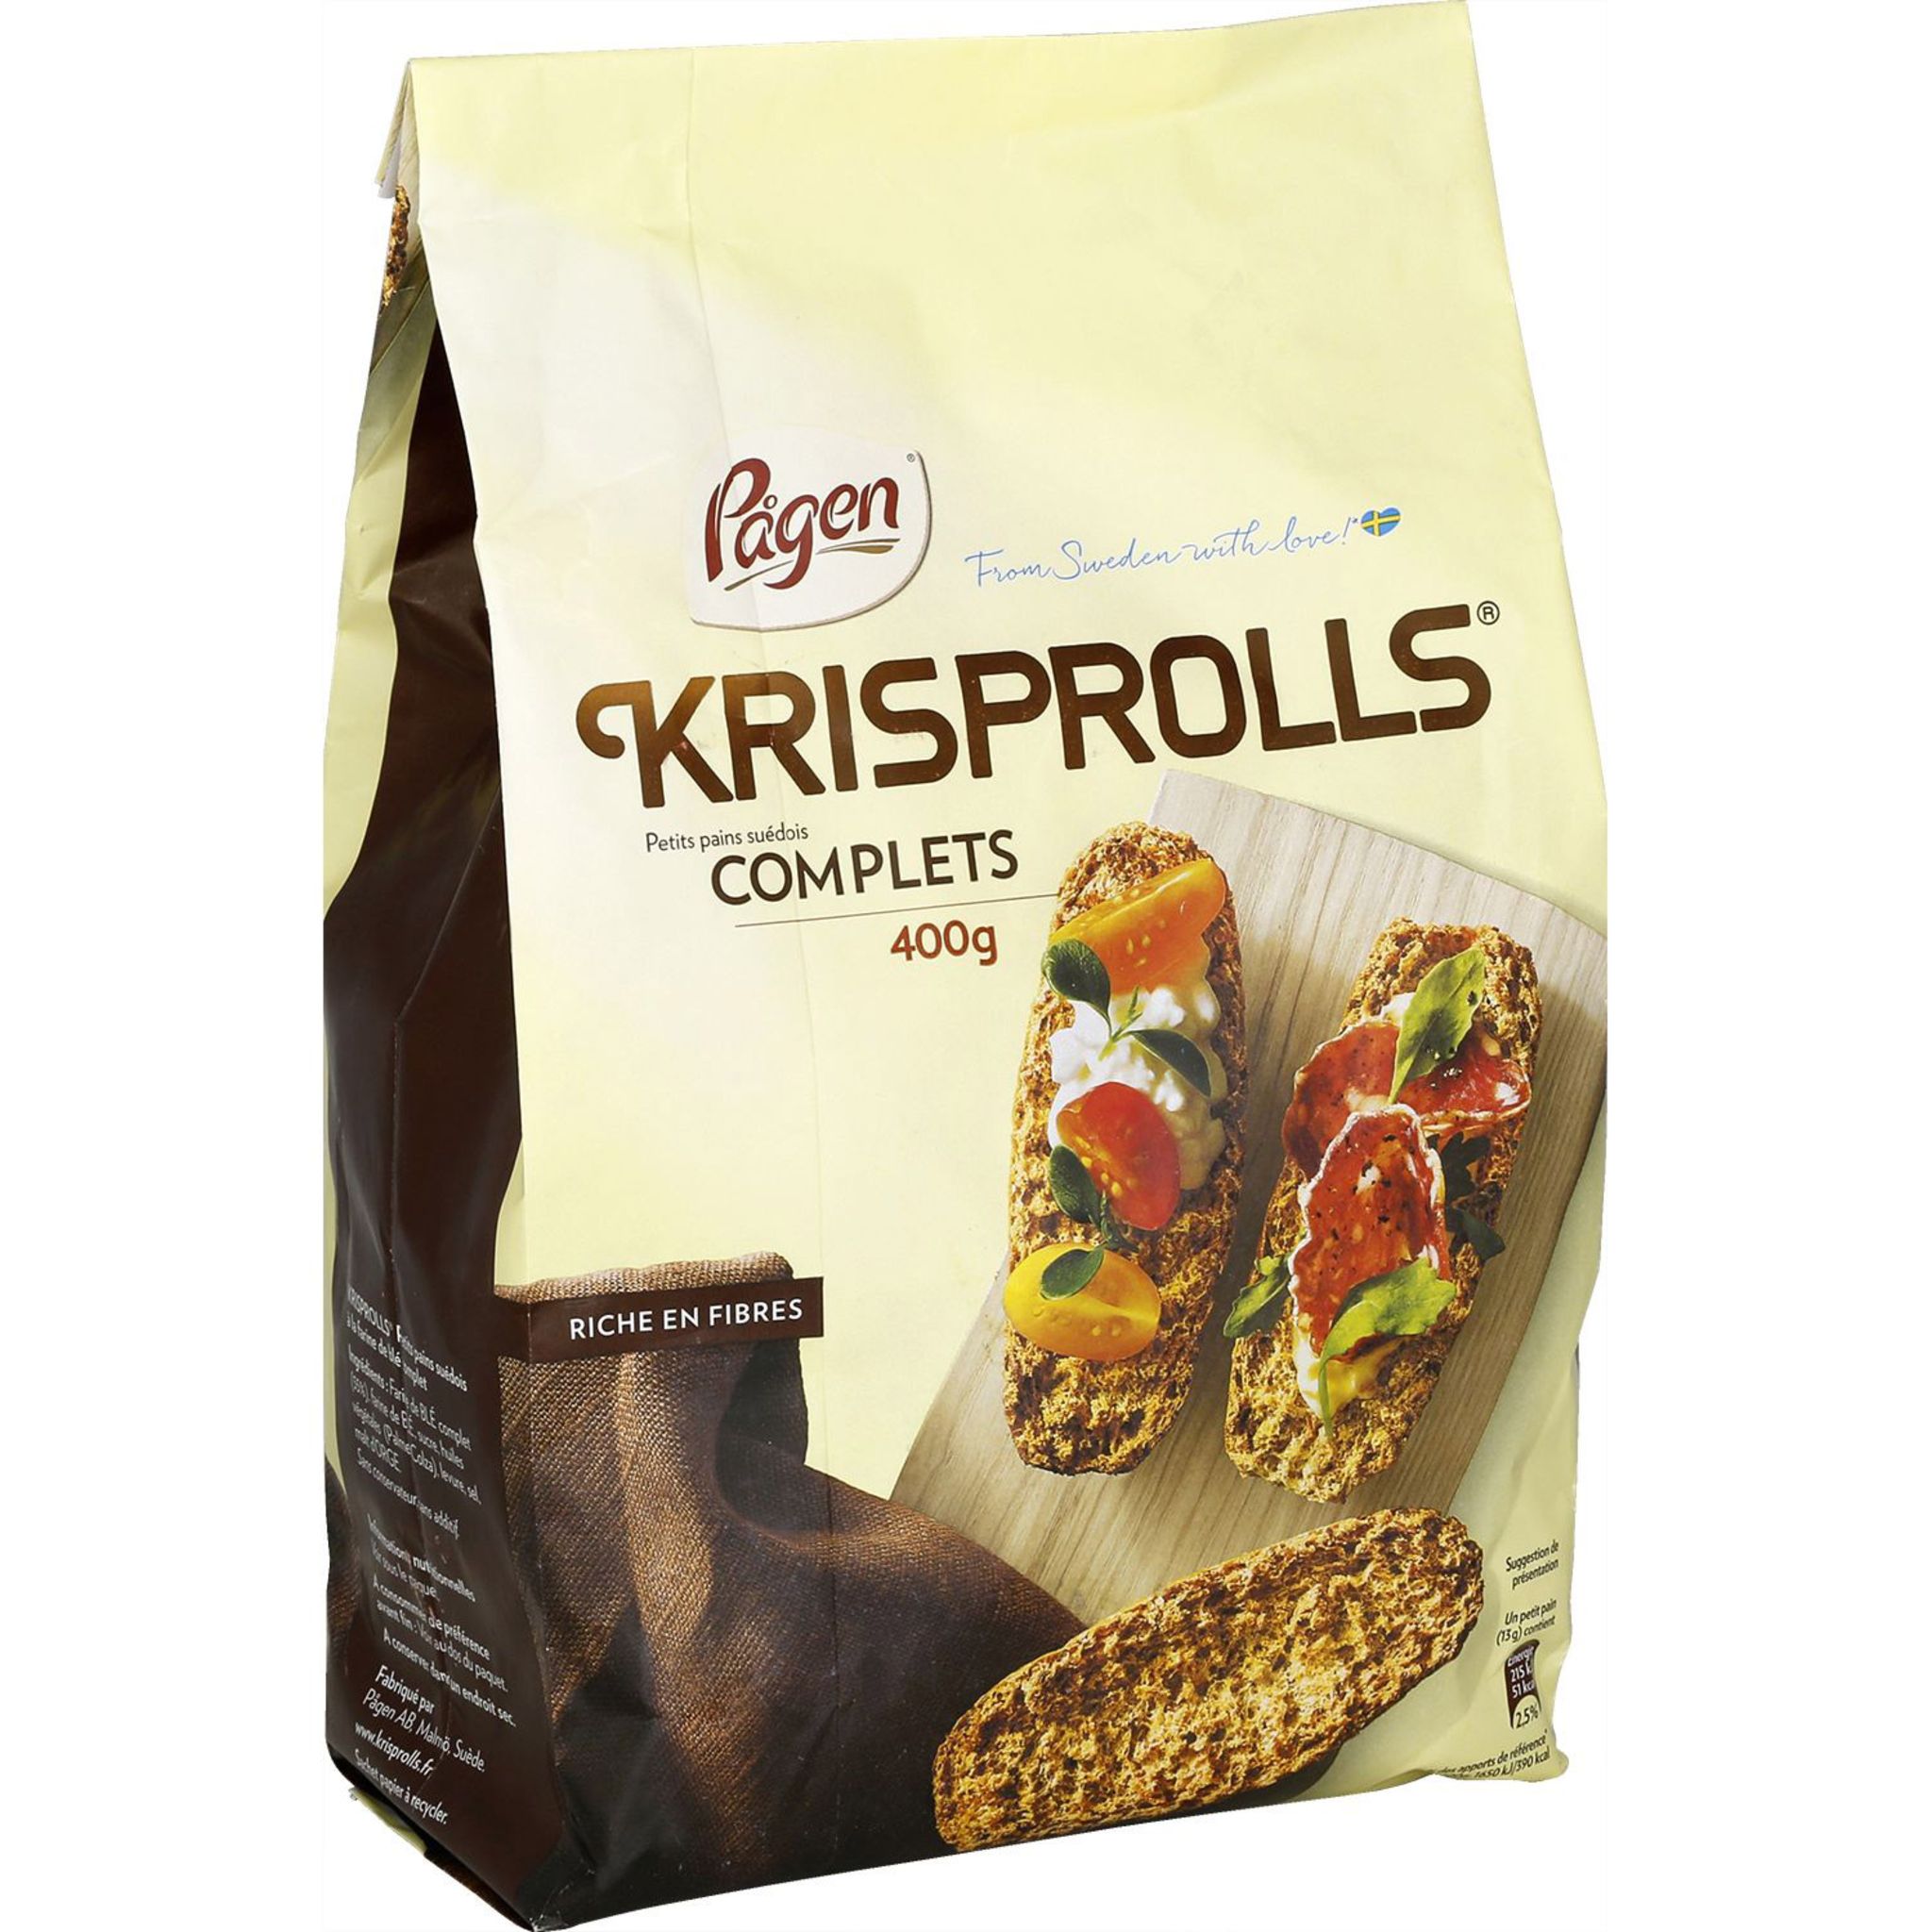 Krisprolls : un peu de légèreté, çå ne mange pas de påin. - Krisprolls -  Public Actif - agence Digitale